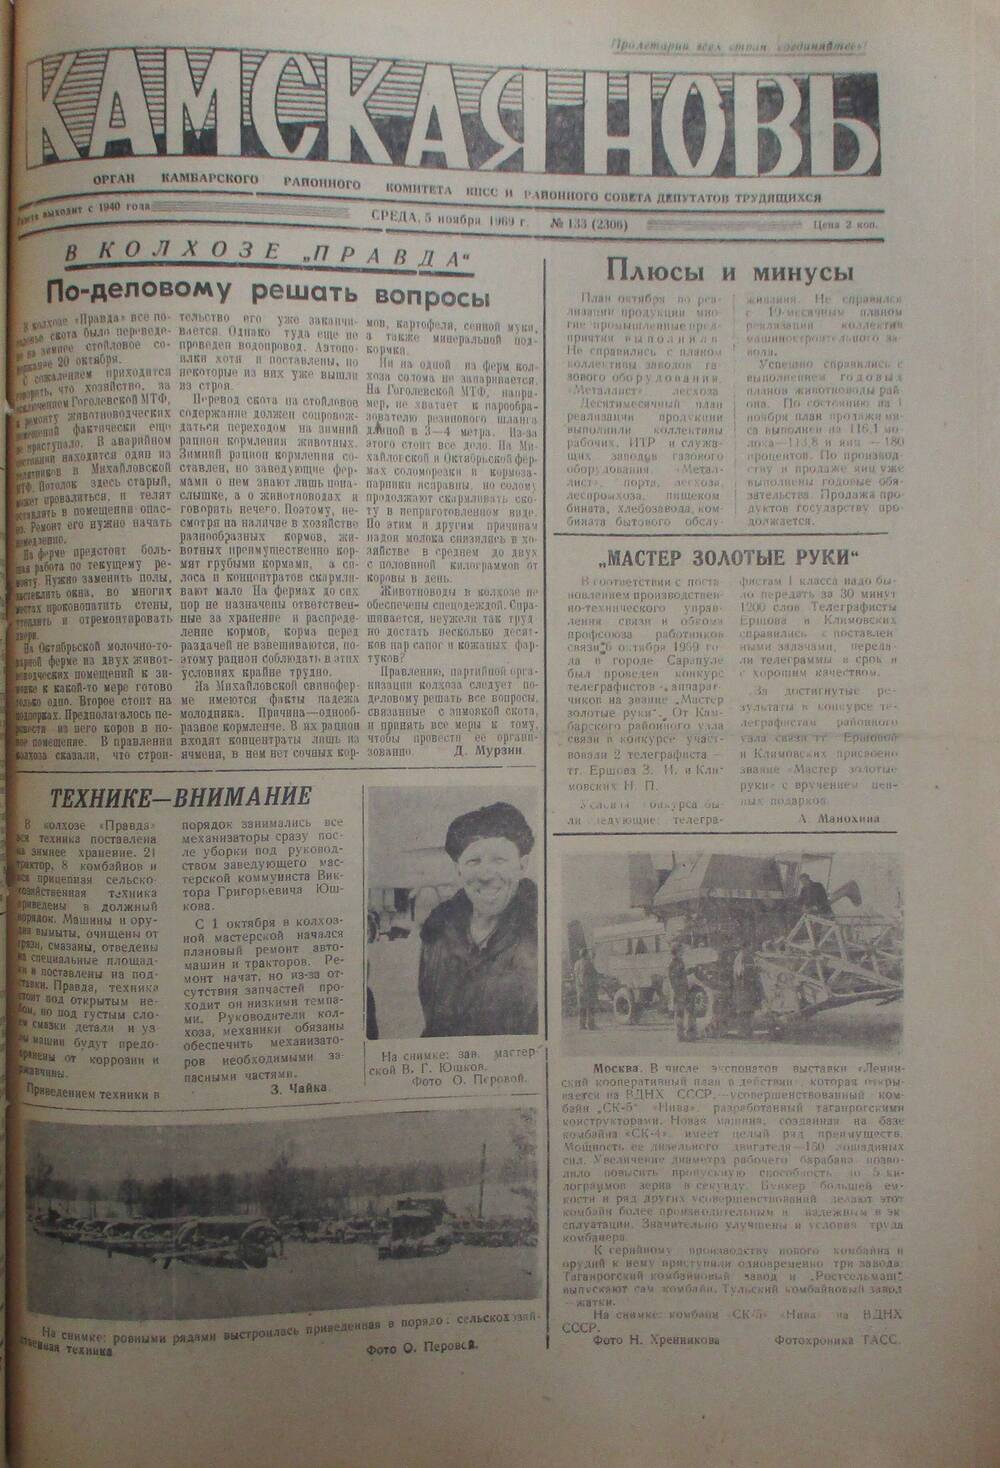 Газеты Камская новь за 1969 год, орган Камбарского райсовета и  РККПСС, с №1 по №66, с №68 по №156. №133.